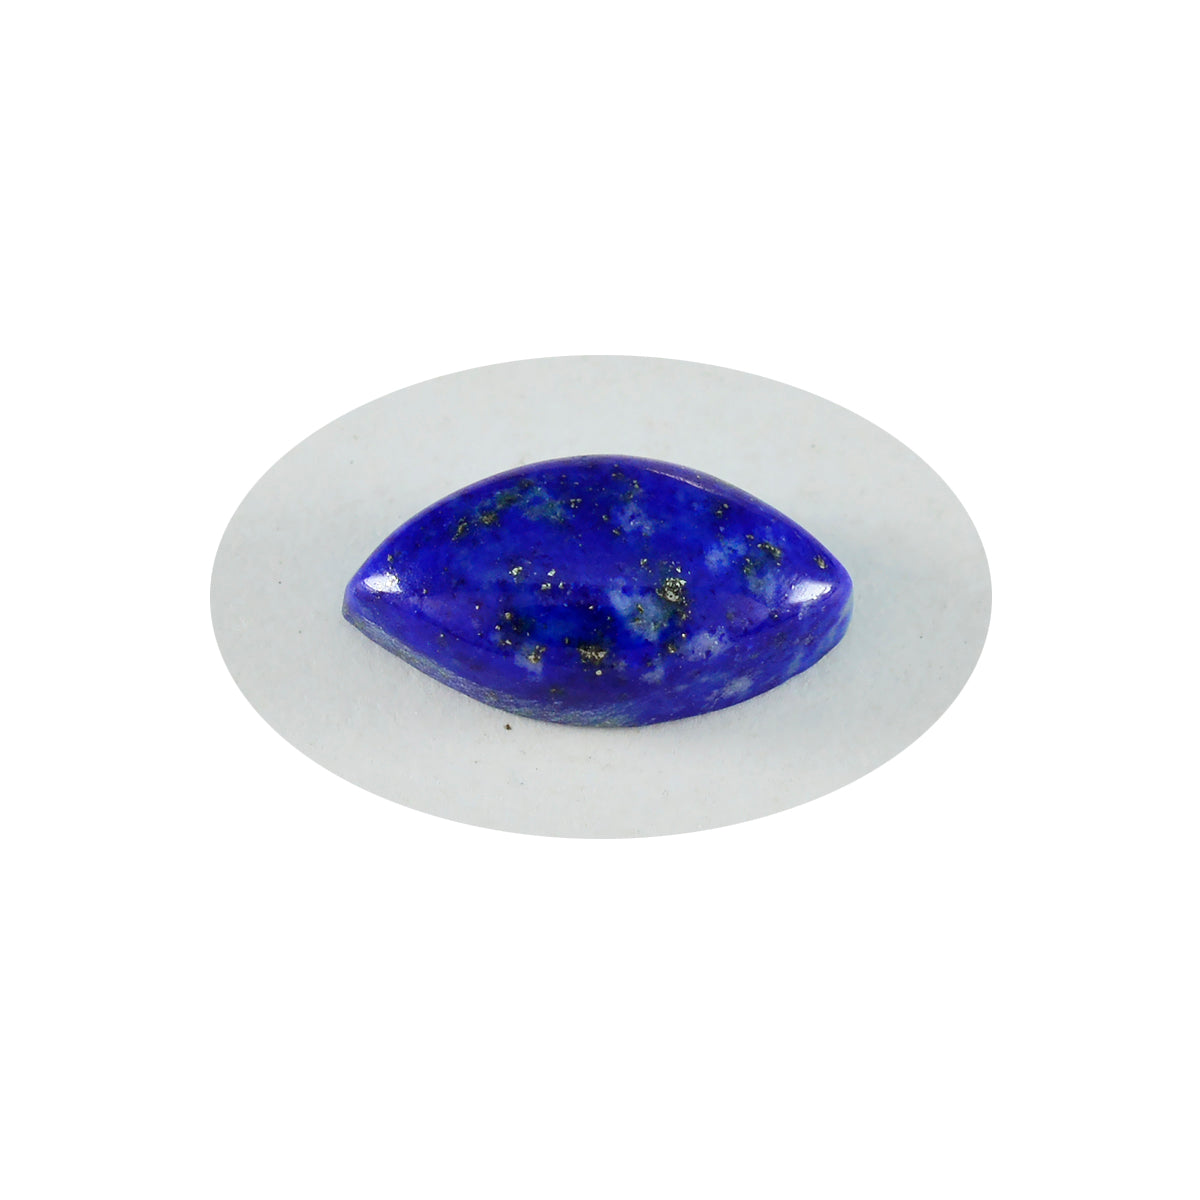 Riyogems 1 pièce cabochon lapis-lazuli bleu 9x18mm forme marquise belles pierres précieuses en vrac de qualité